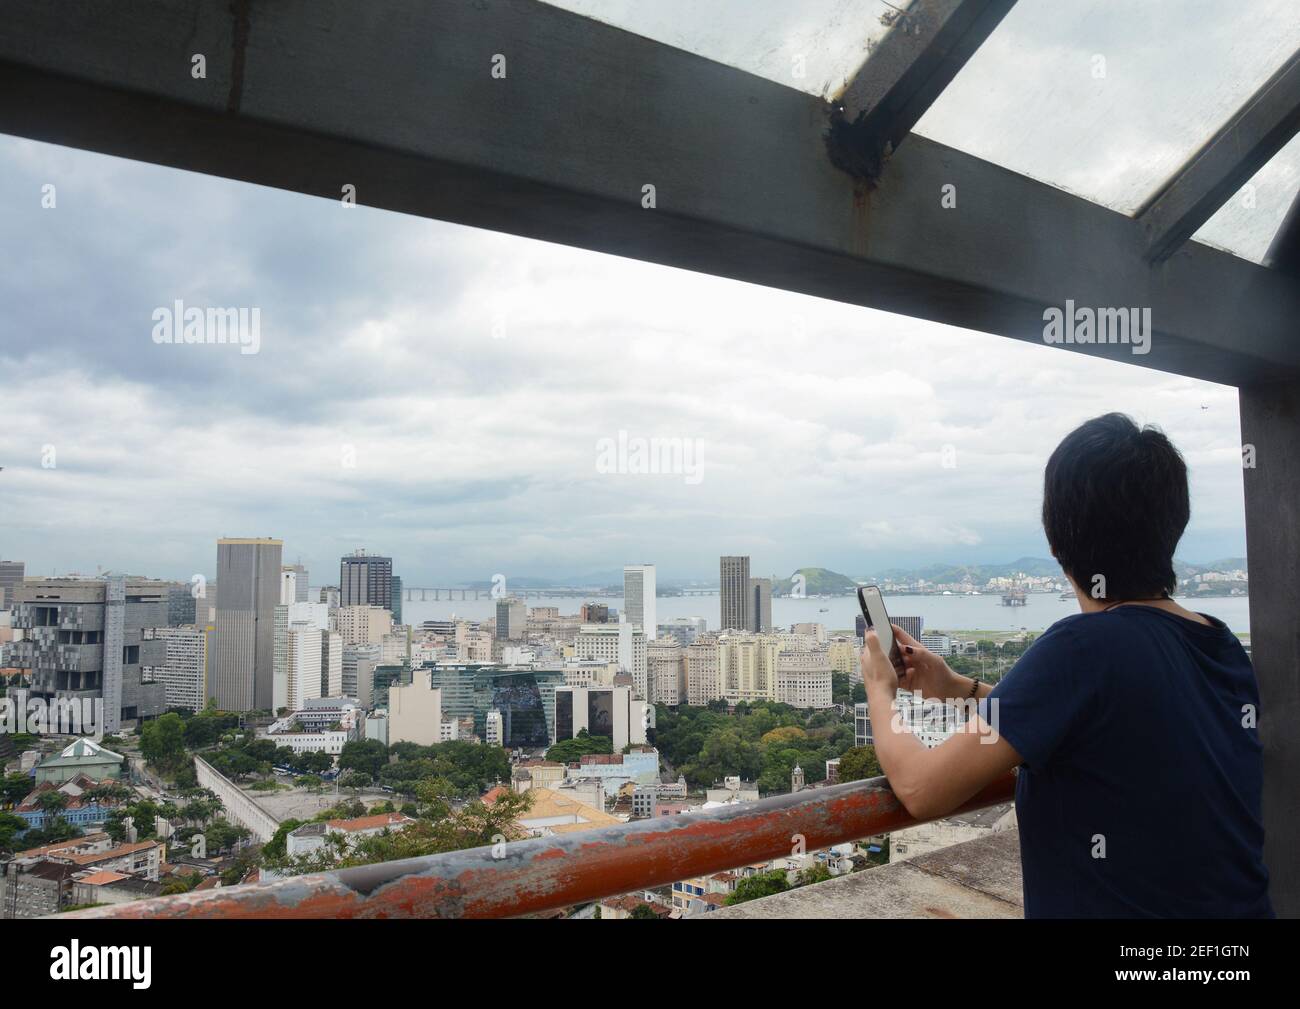 RIO DE JANEIRO, BRASILE - 3 GENNAIO 2020: Donna non identificata con un telefono cellulare guarda la vista panoramica del centro di Rio con importanti edifici, Foto Stock